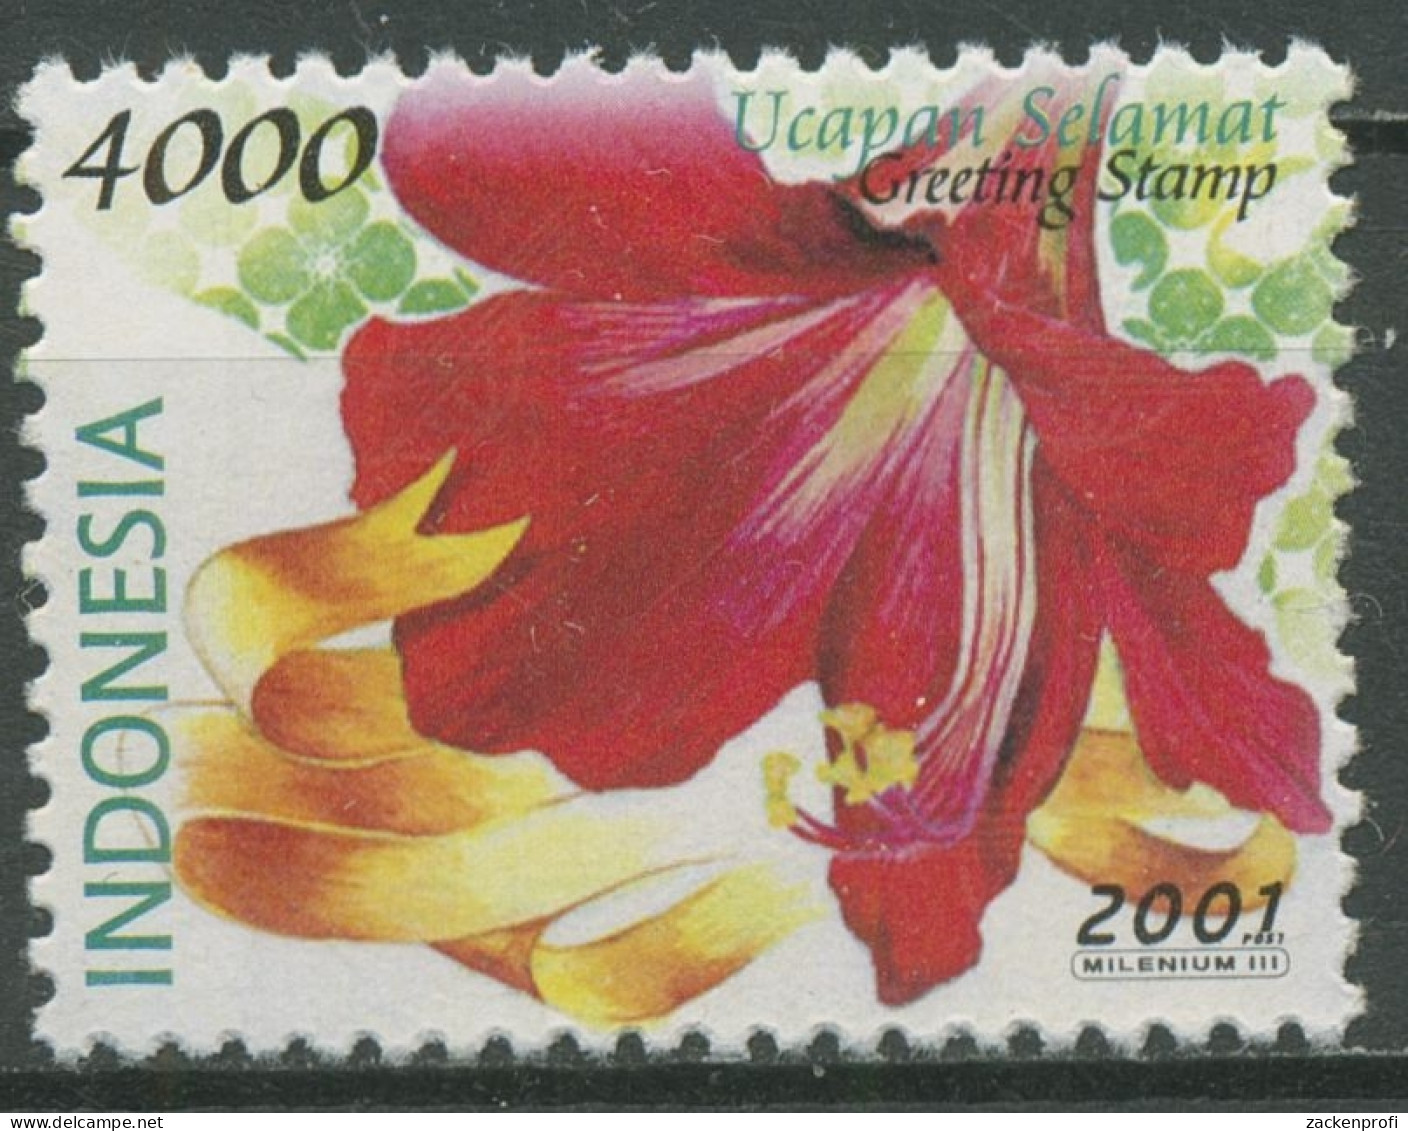 Indonesien 2001 Grußmarken Blumen Amaryllis 2106 Postfrisch - Indonesia